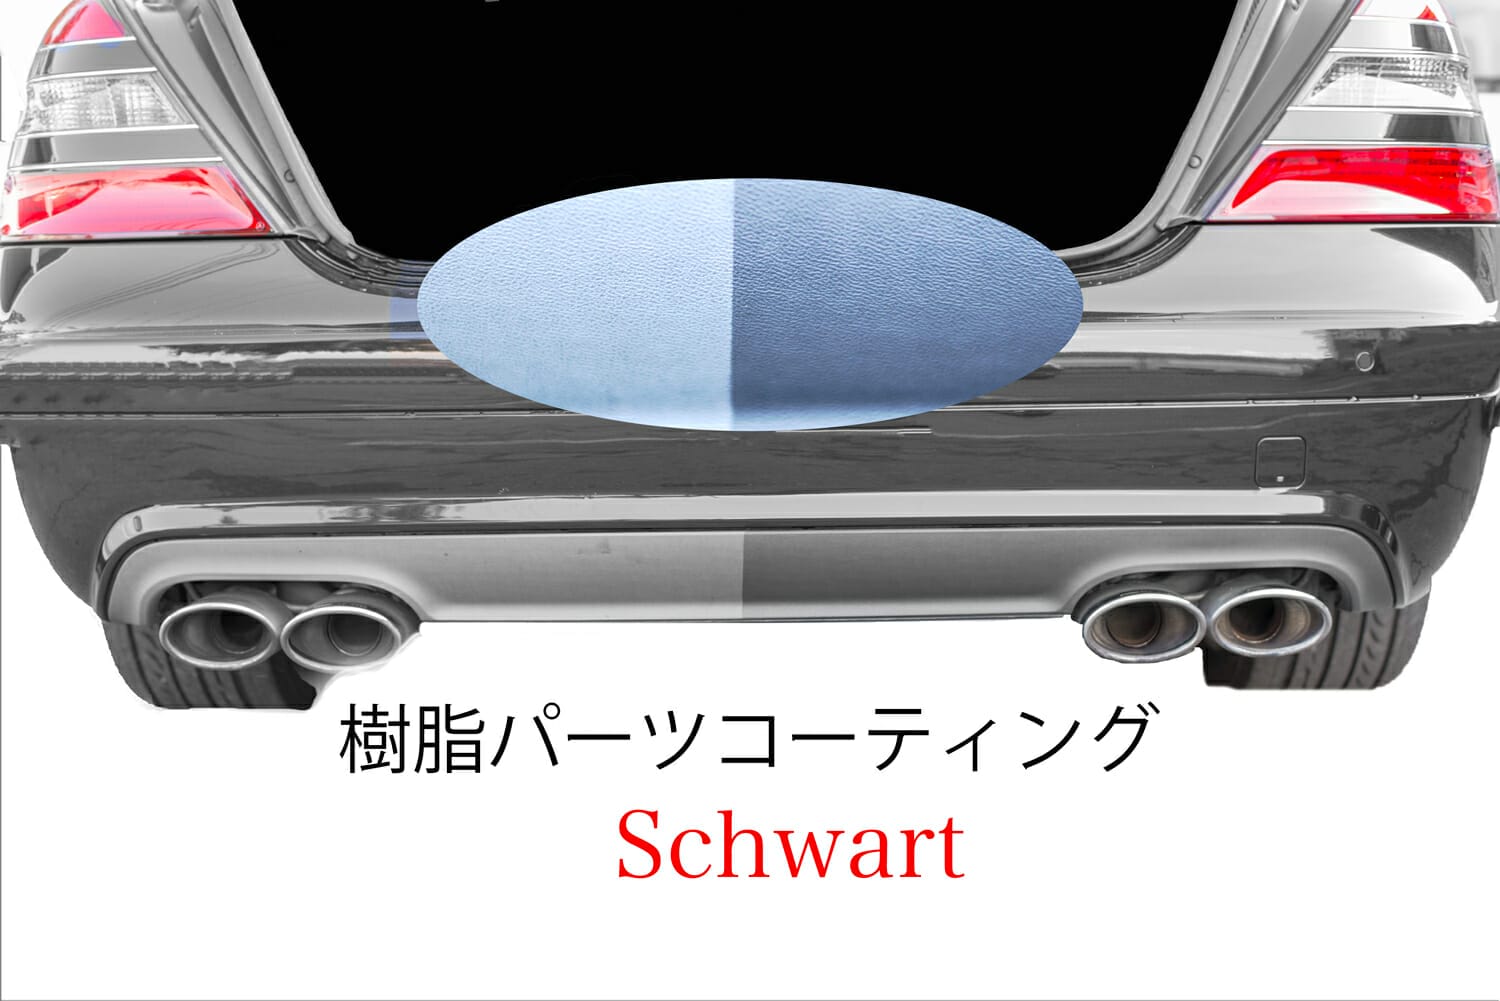 樹脂パーツコーティング Schwarz シュバルツ 劣化による白濁を黒色に 新車時に施工で樹脂パーツ劣化防止